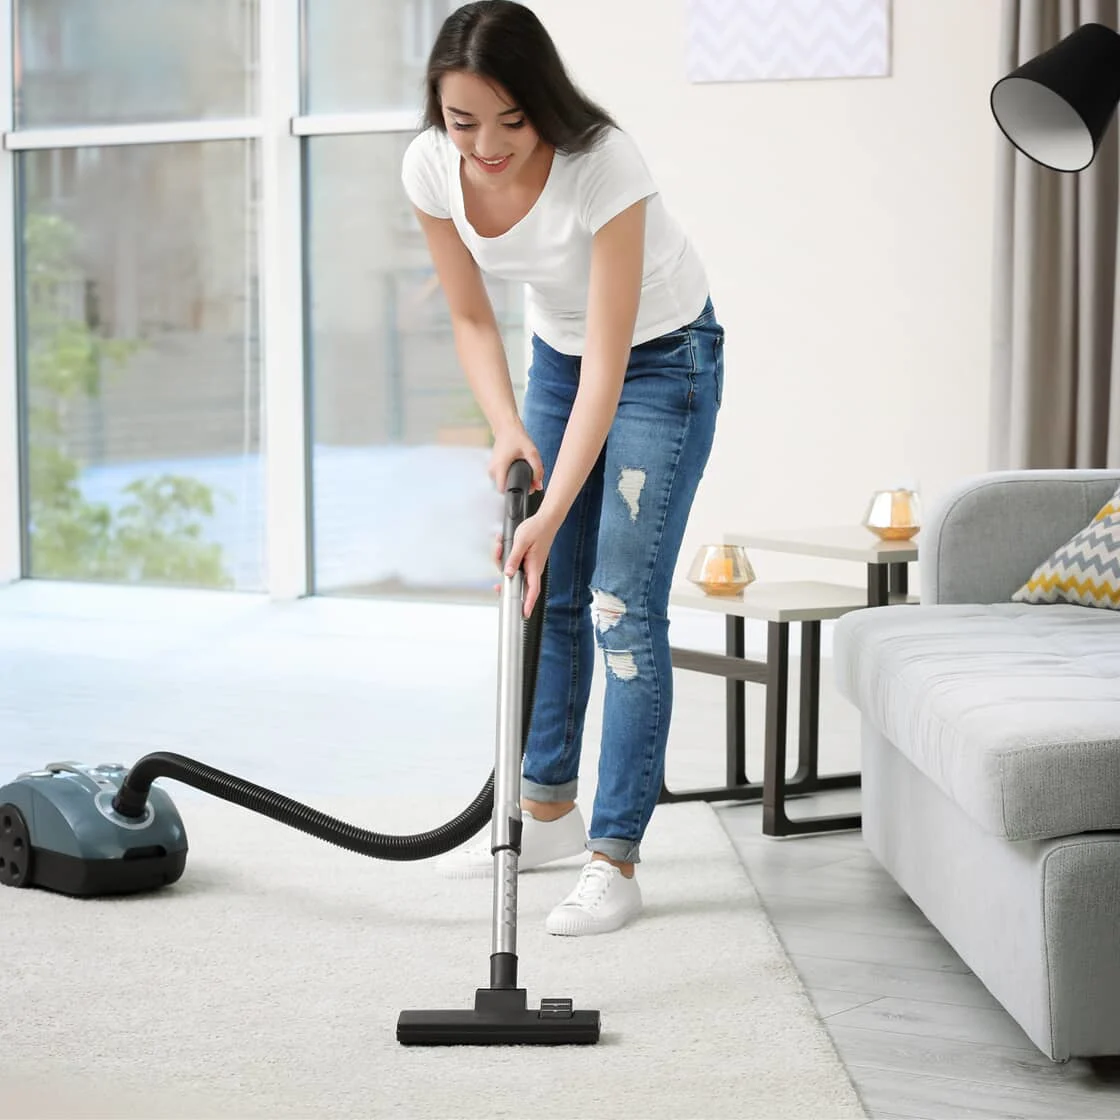 Vacuuming a rug